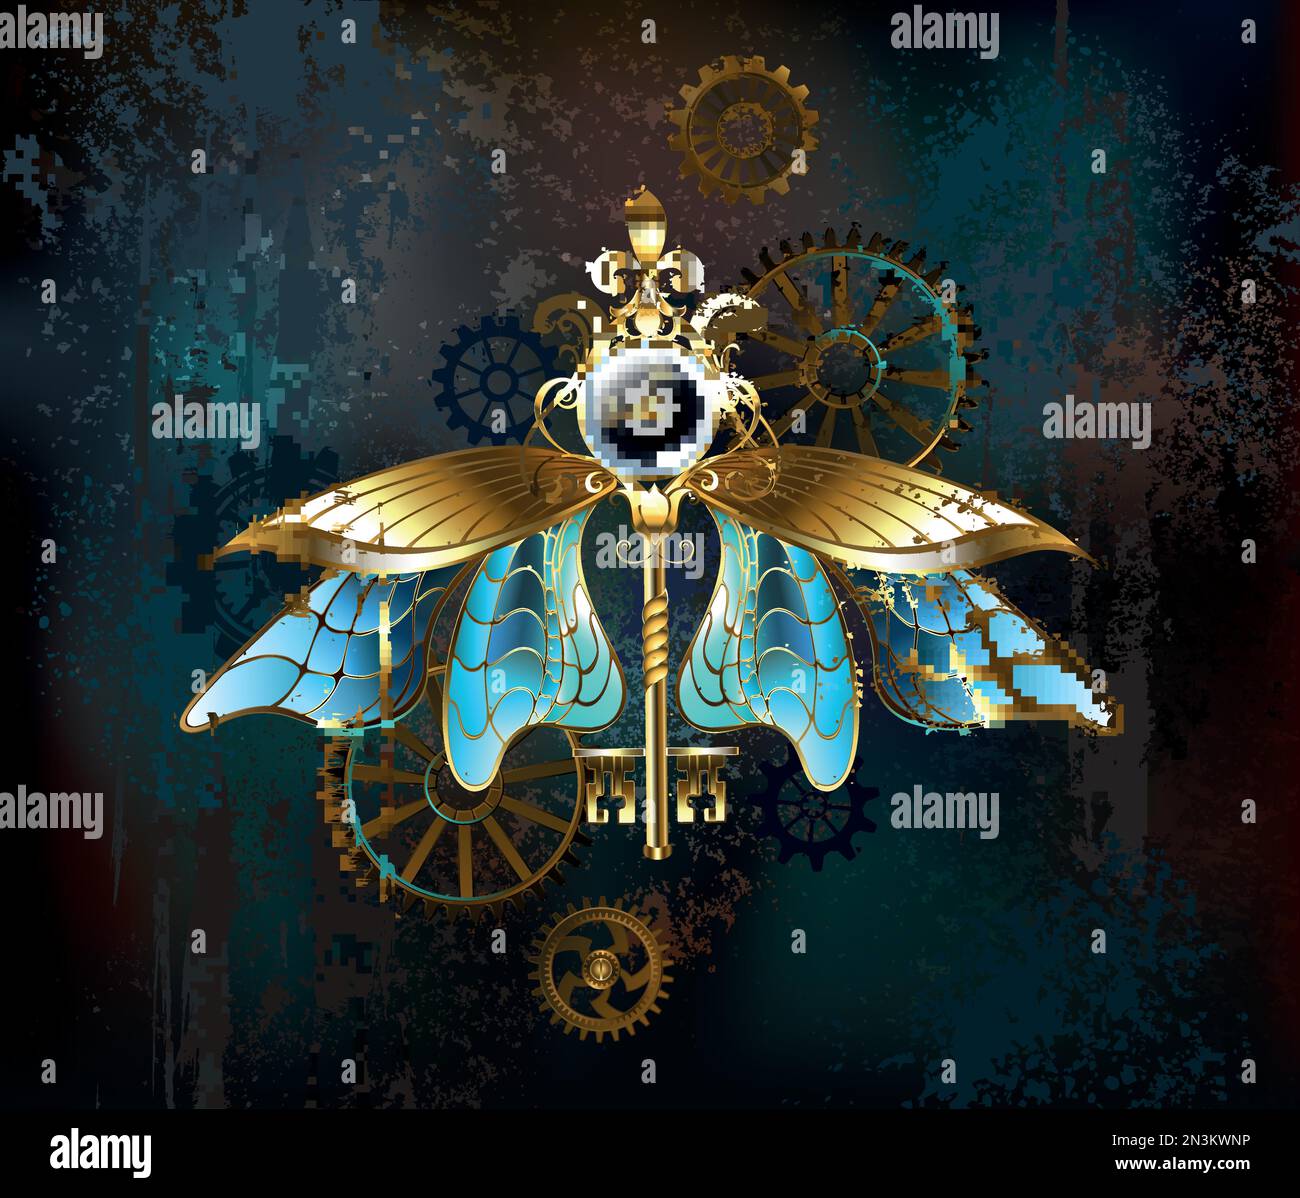 Antik, Schmuck, goldener Schlüssel mit weißer Uhr, dekoriert mit transparenten, blauen Insektenflügeln auf abgenutztem, braunem Steampunk-Hintergrund. Steampunk-Style. Stock Vektor